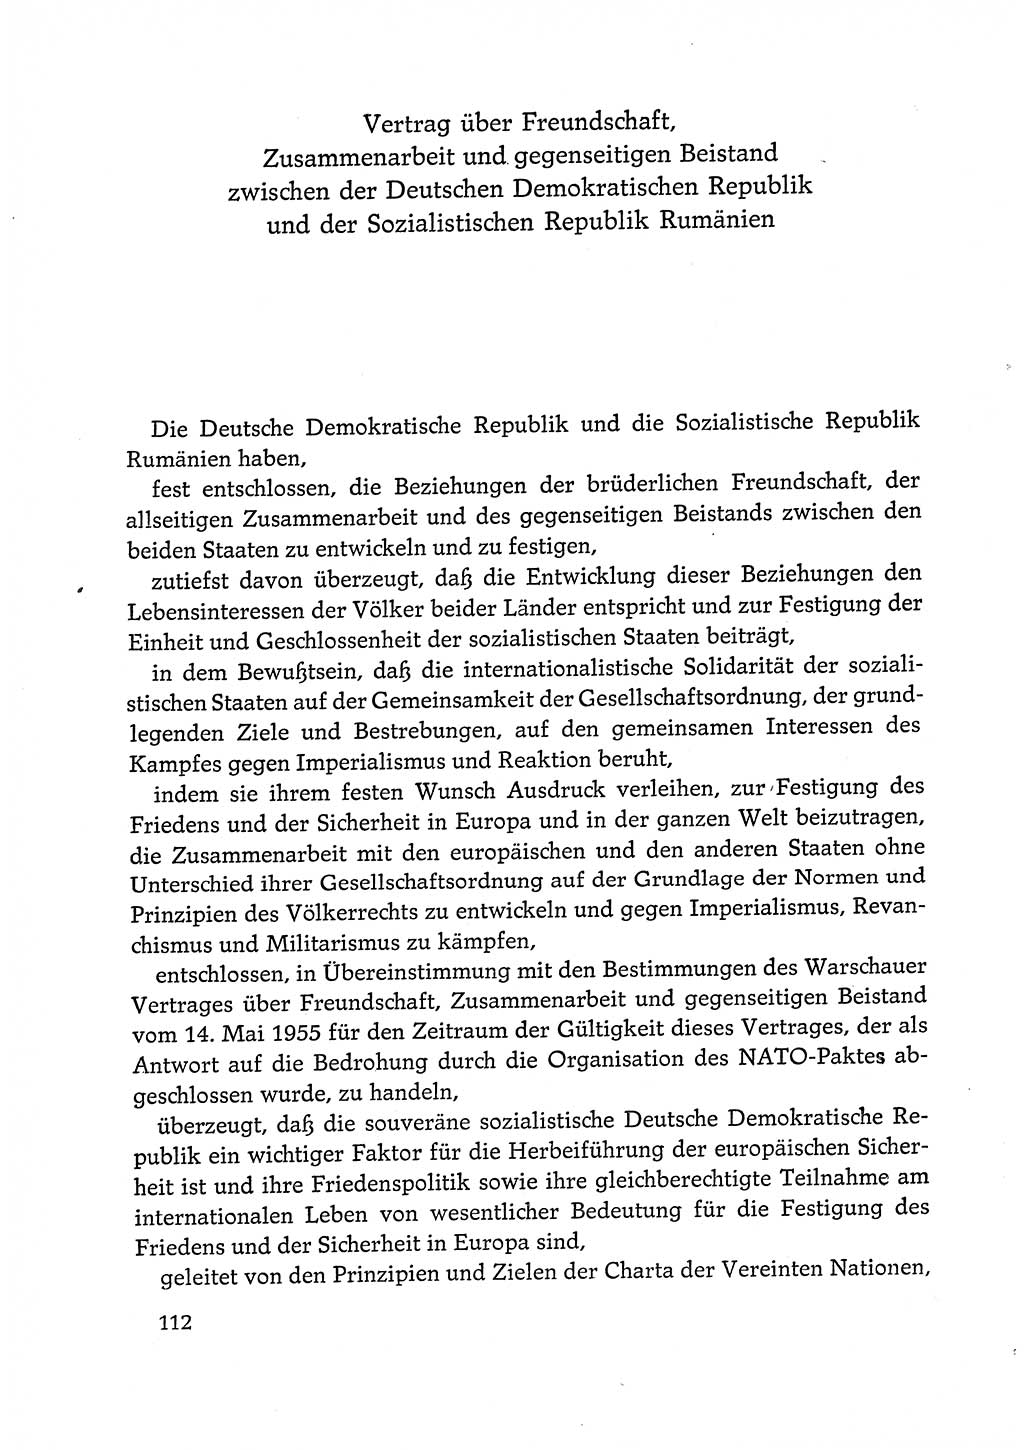 Dokumente der Sozialistischen Einheitspartei Deutschlands (SED) [Deutsche Demokratische Republik (DDR)] 1972-1973, Seite 112 (Dok. SED DDR 1972-1973, S. 112)